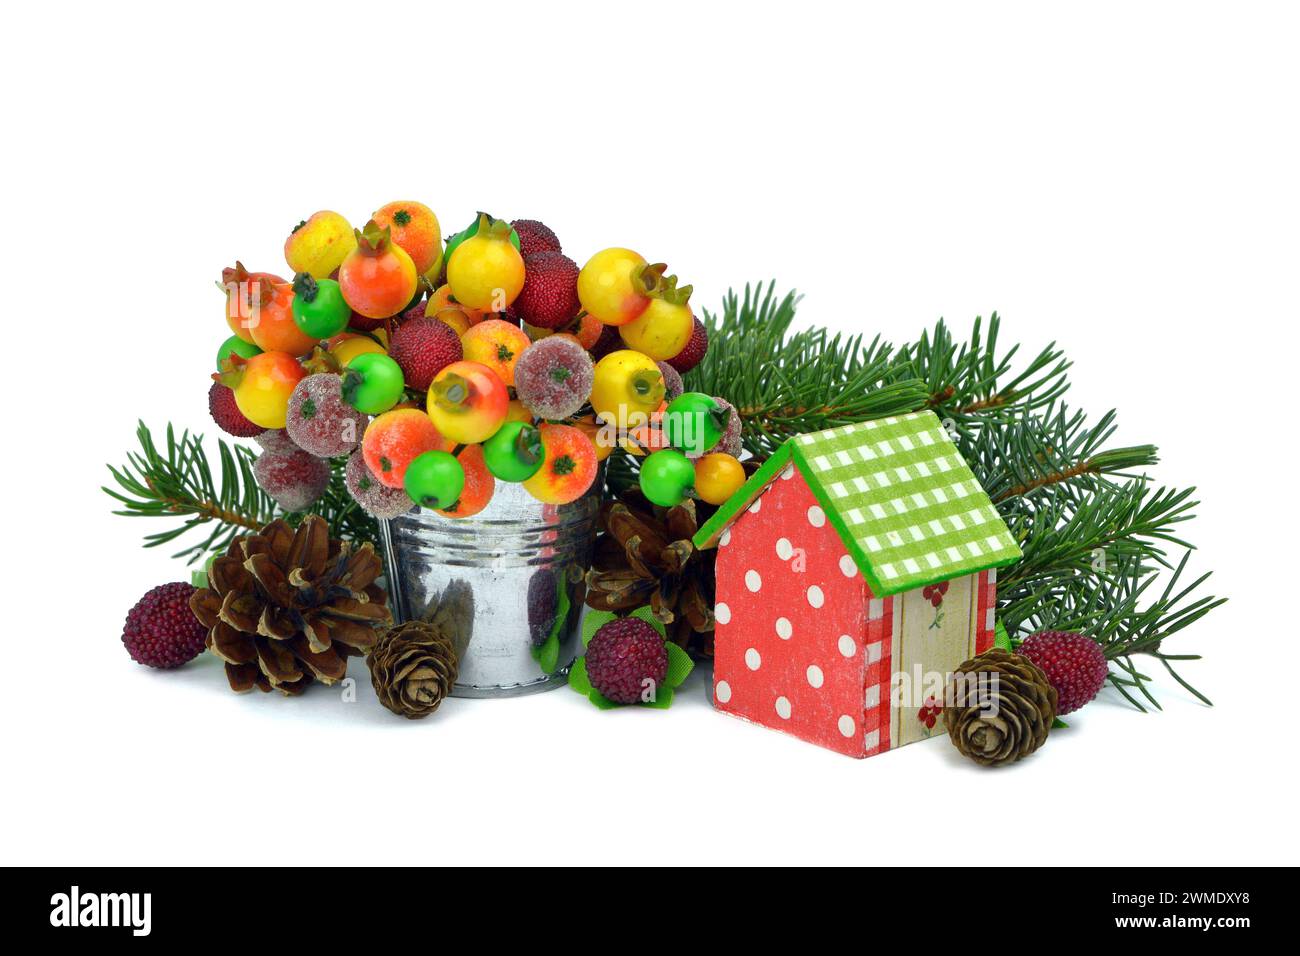 Composition de Noël : baies congelées, jouets faits main, cônes, sphères. Isolé sur fond blanc.branches d'épinette et guirlandes. Banque D'Images